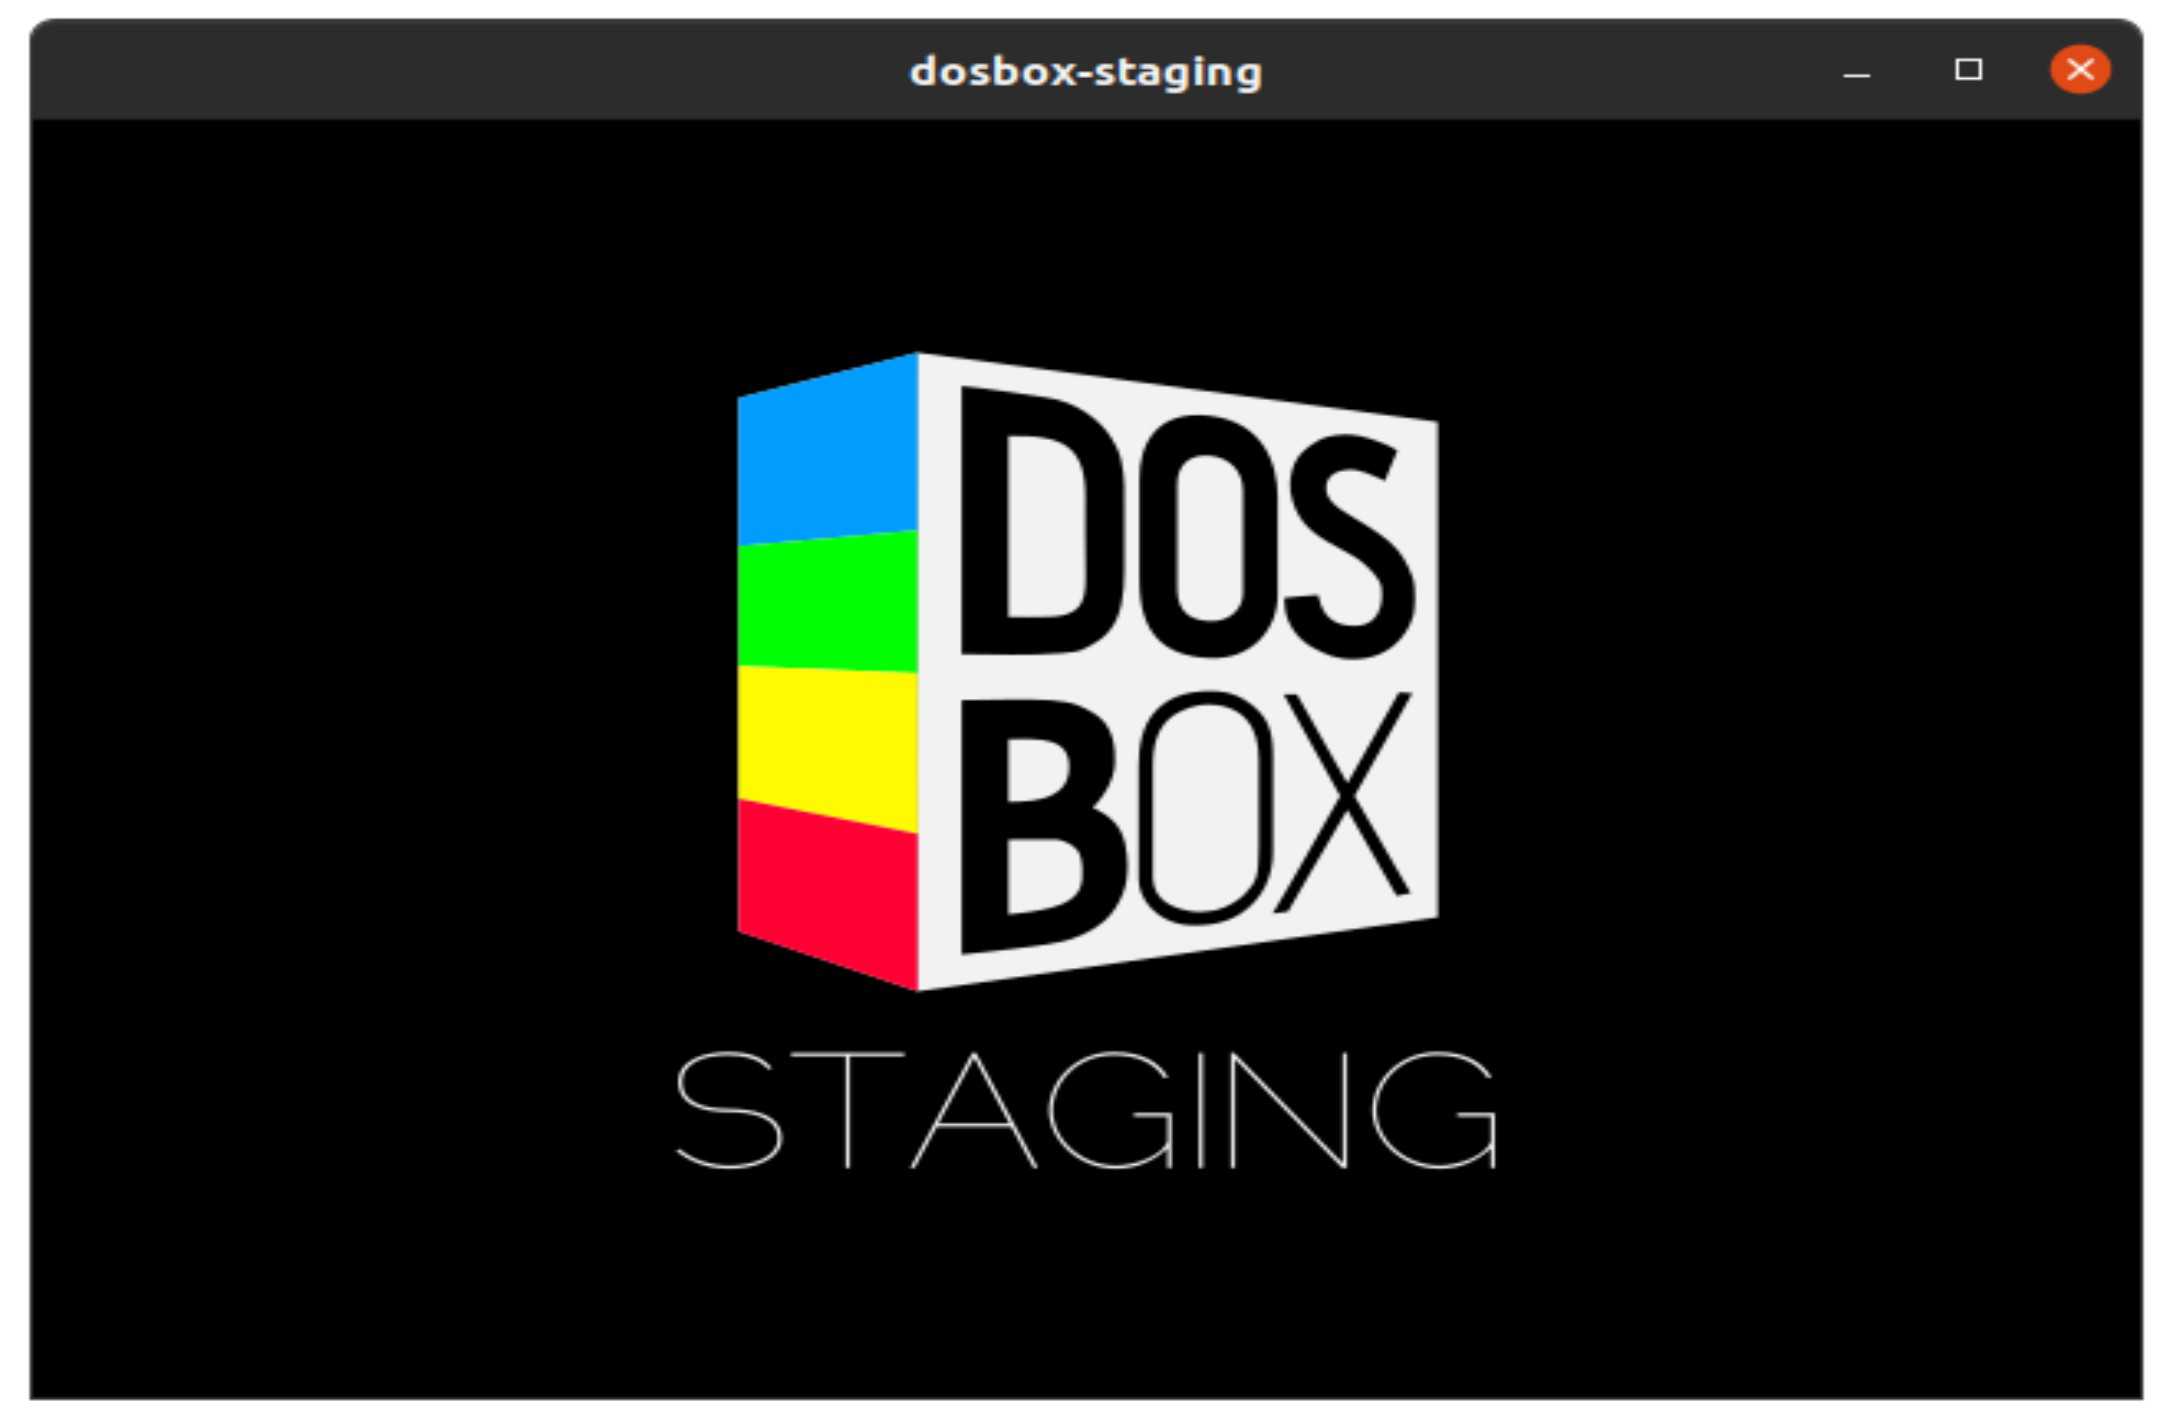 como-instalar-o-dosbox-staging-um-emulador-dos-no-ubuntu-linux-mint-fedora-debian